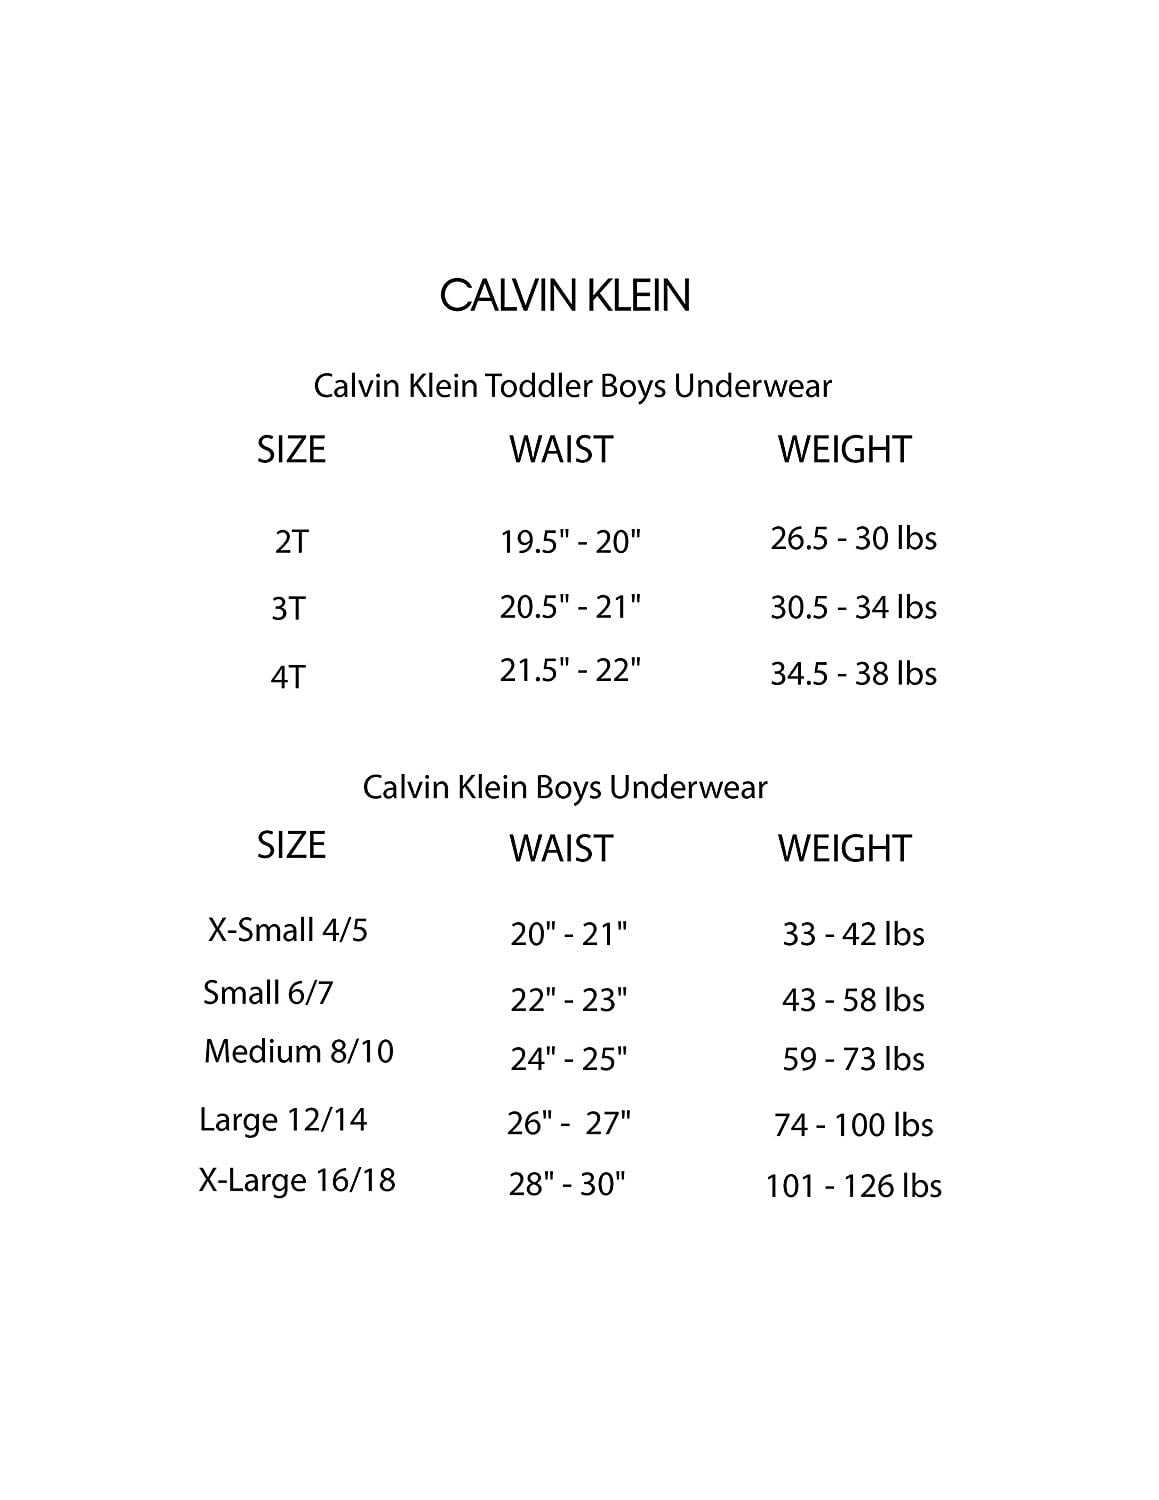 Bra Size Chart Calvin Klein Flash Sales, SAVE 53%.